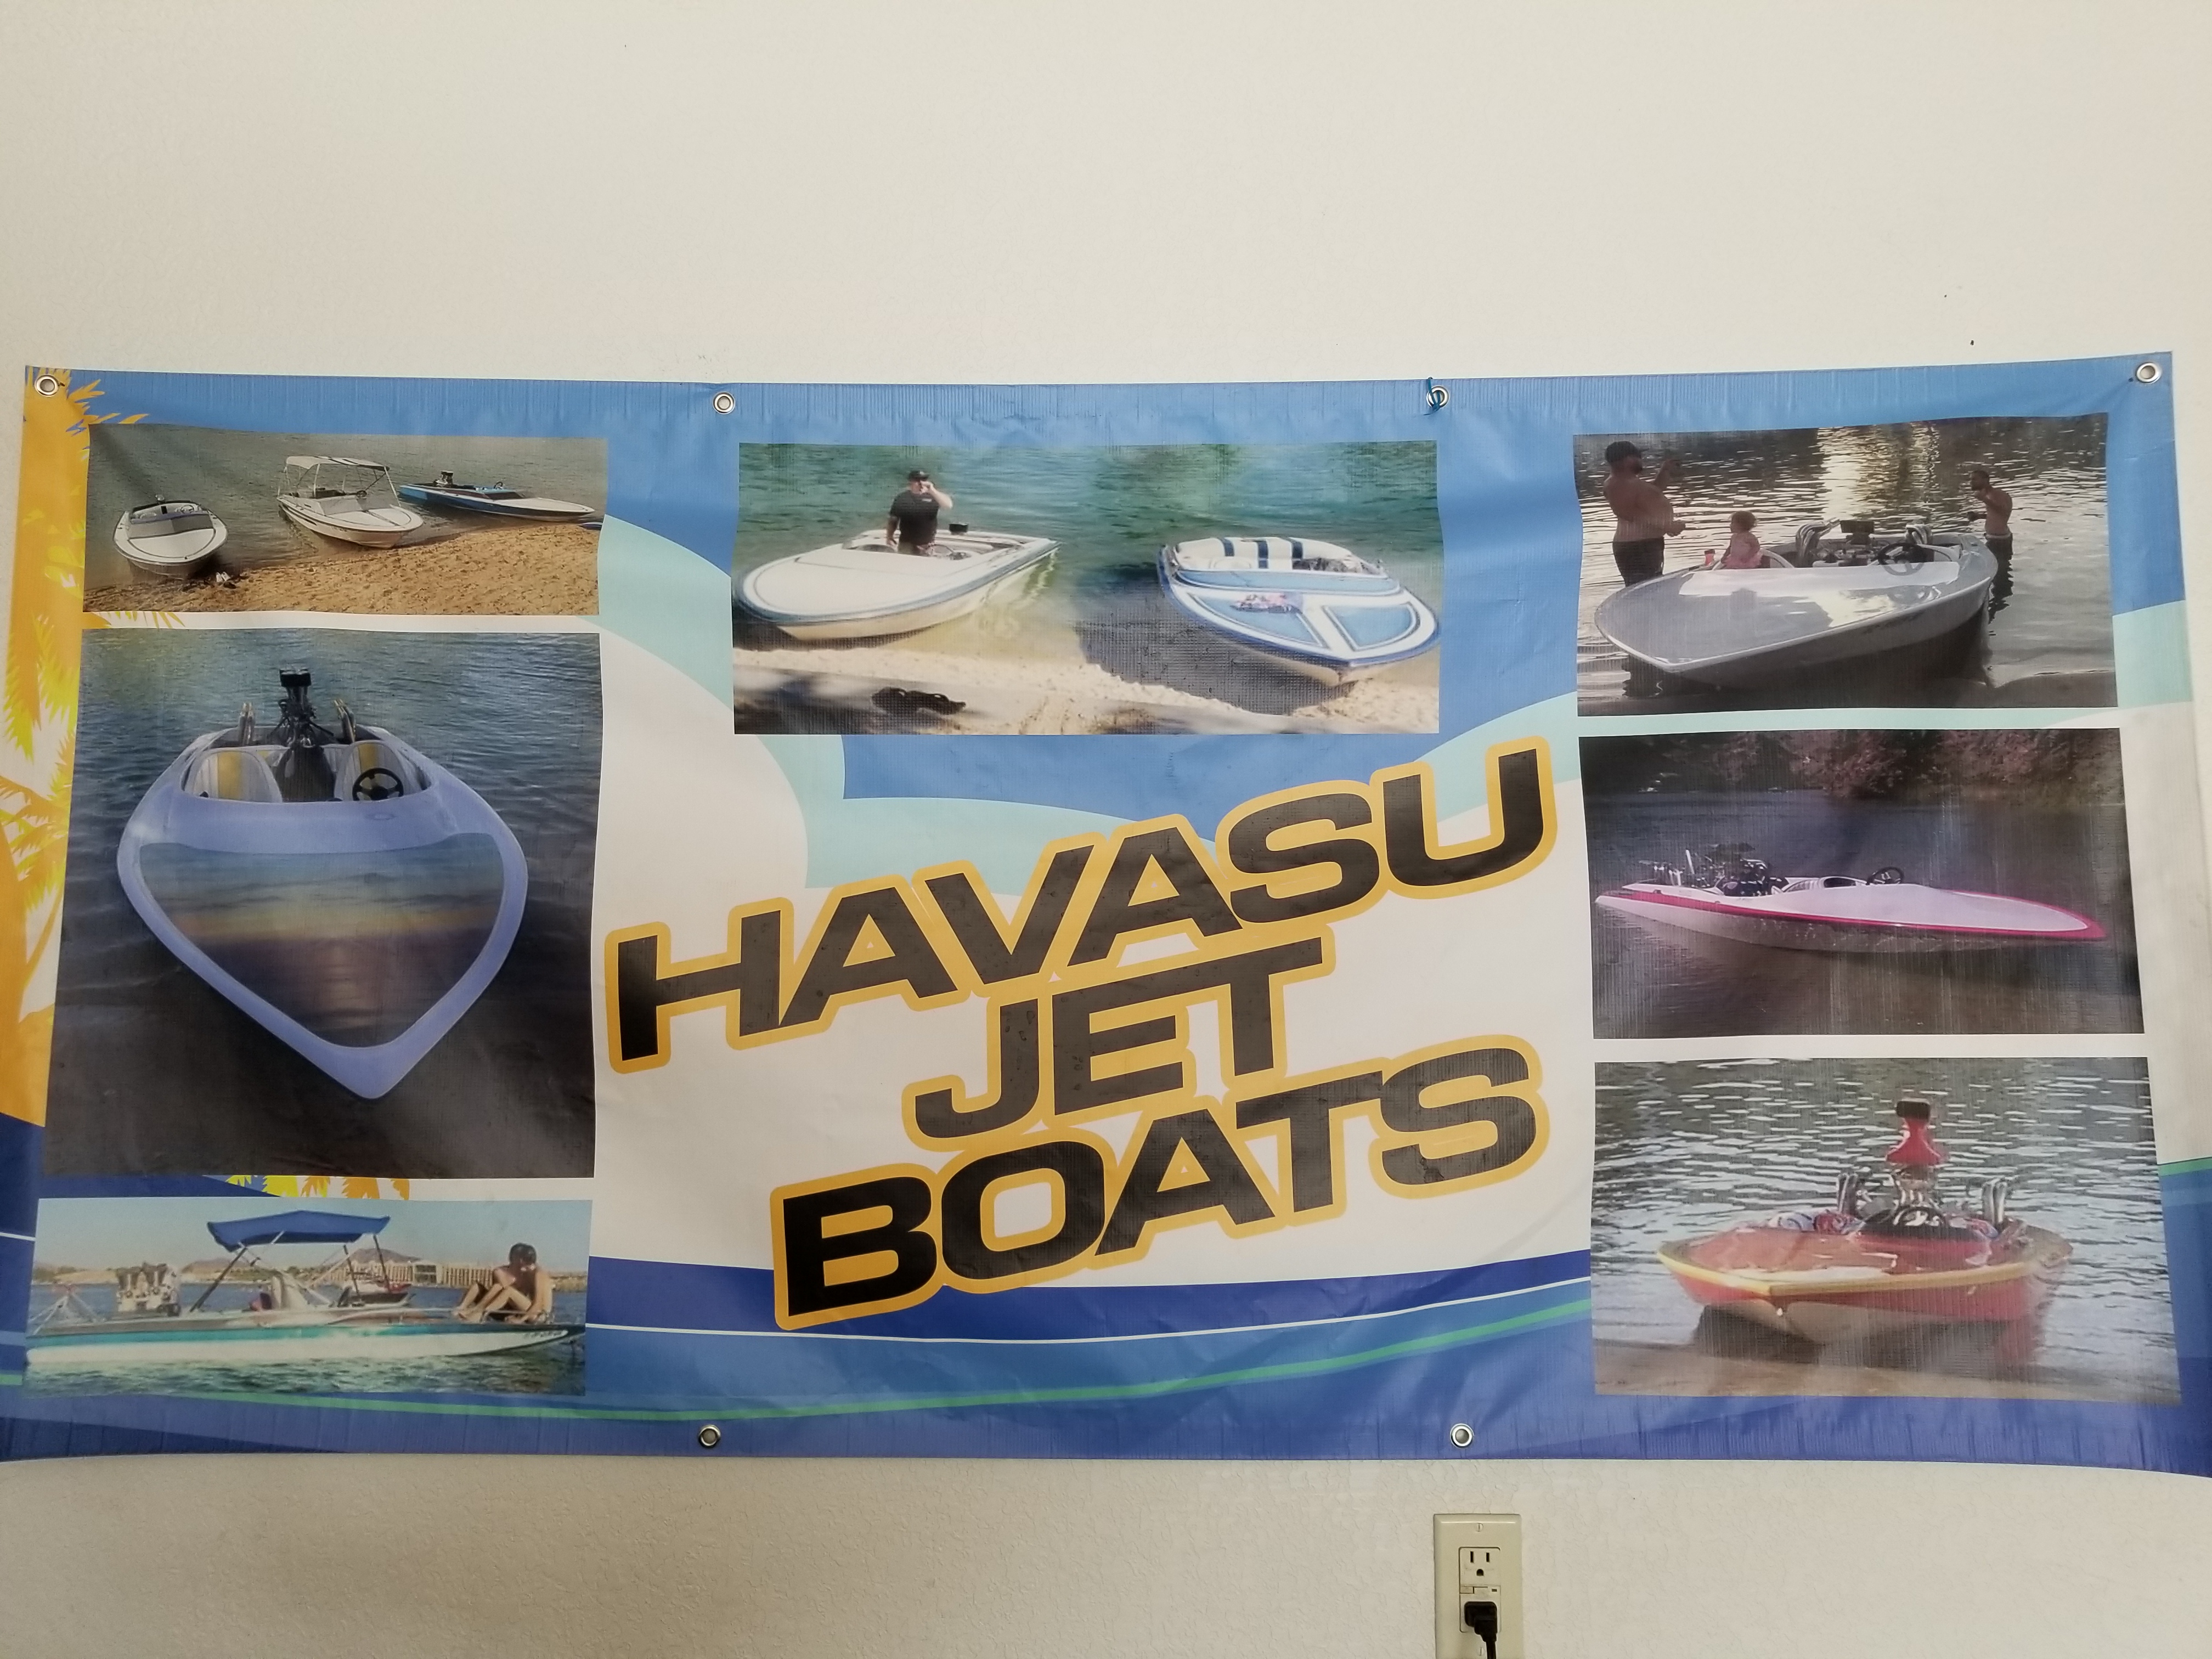 Havasu jet boats